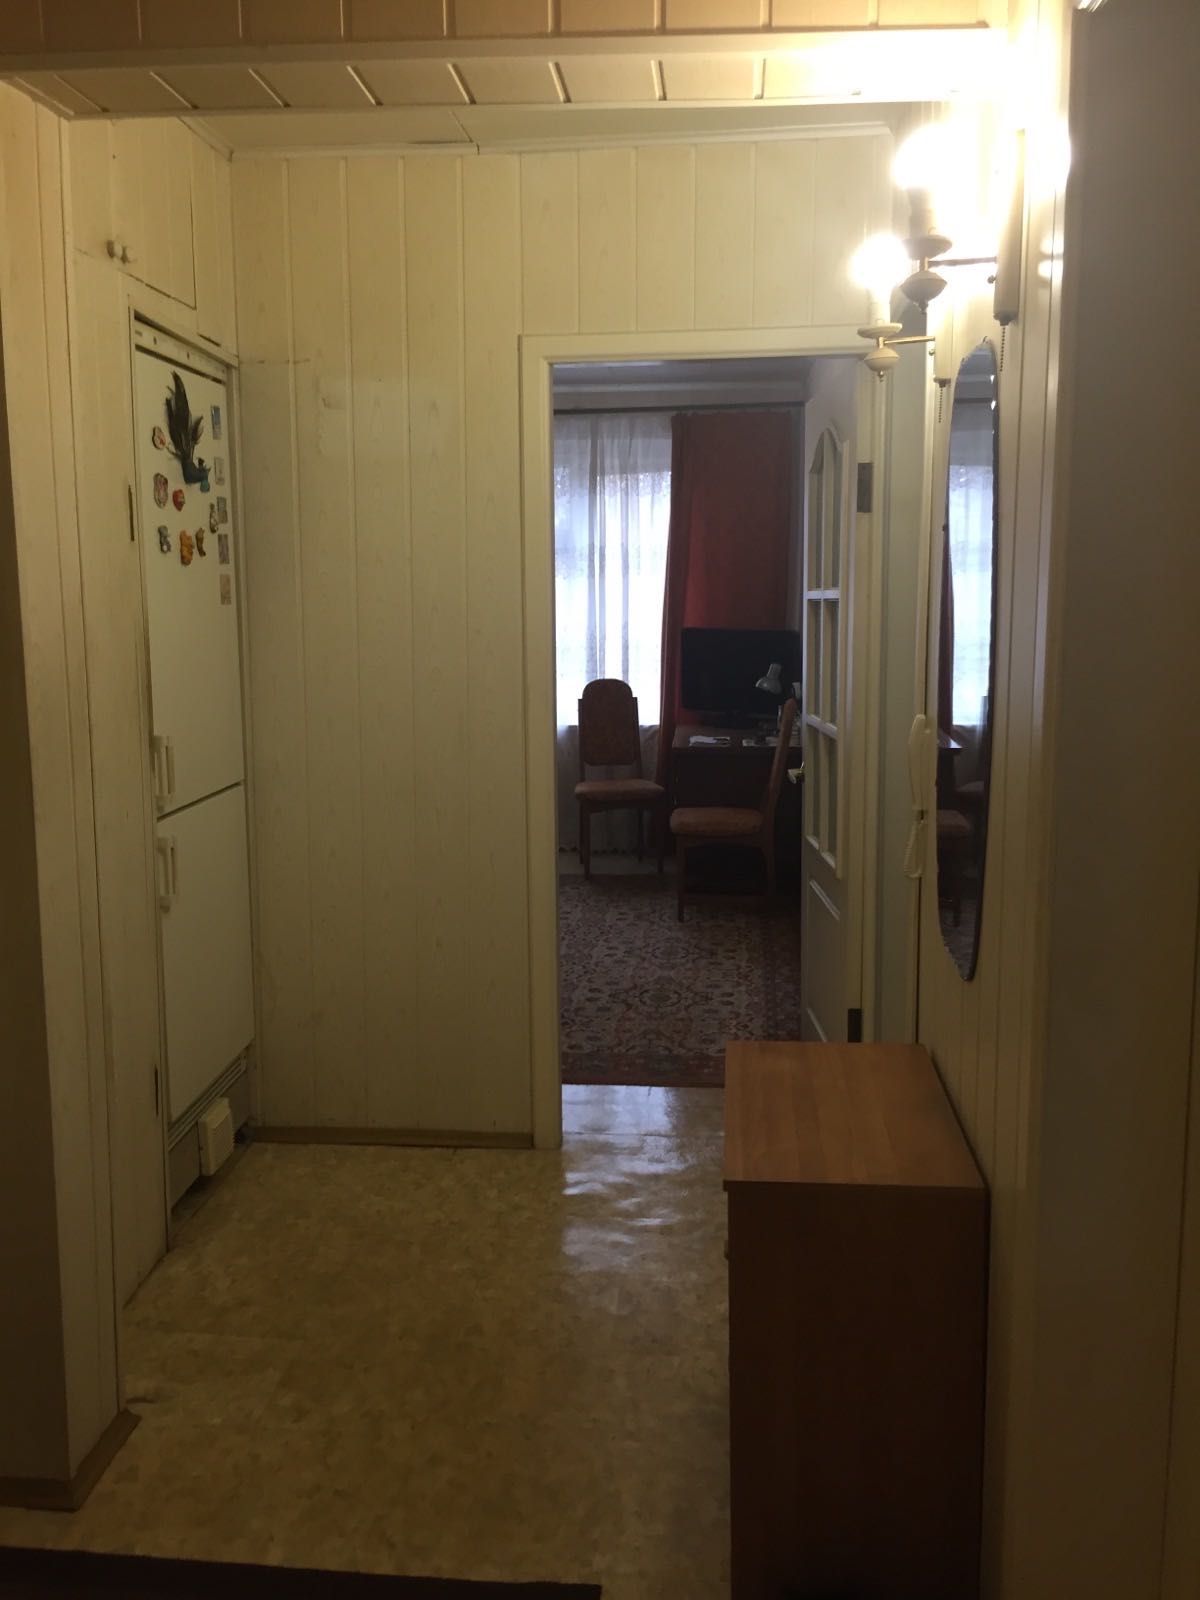 Продам 3-х комнатную квартиру по улице Краснодонской город Никополь.